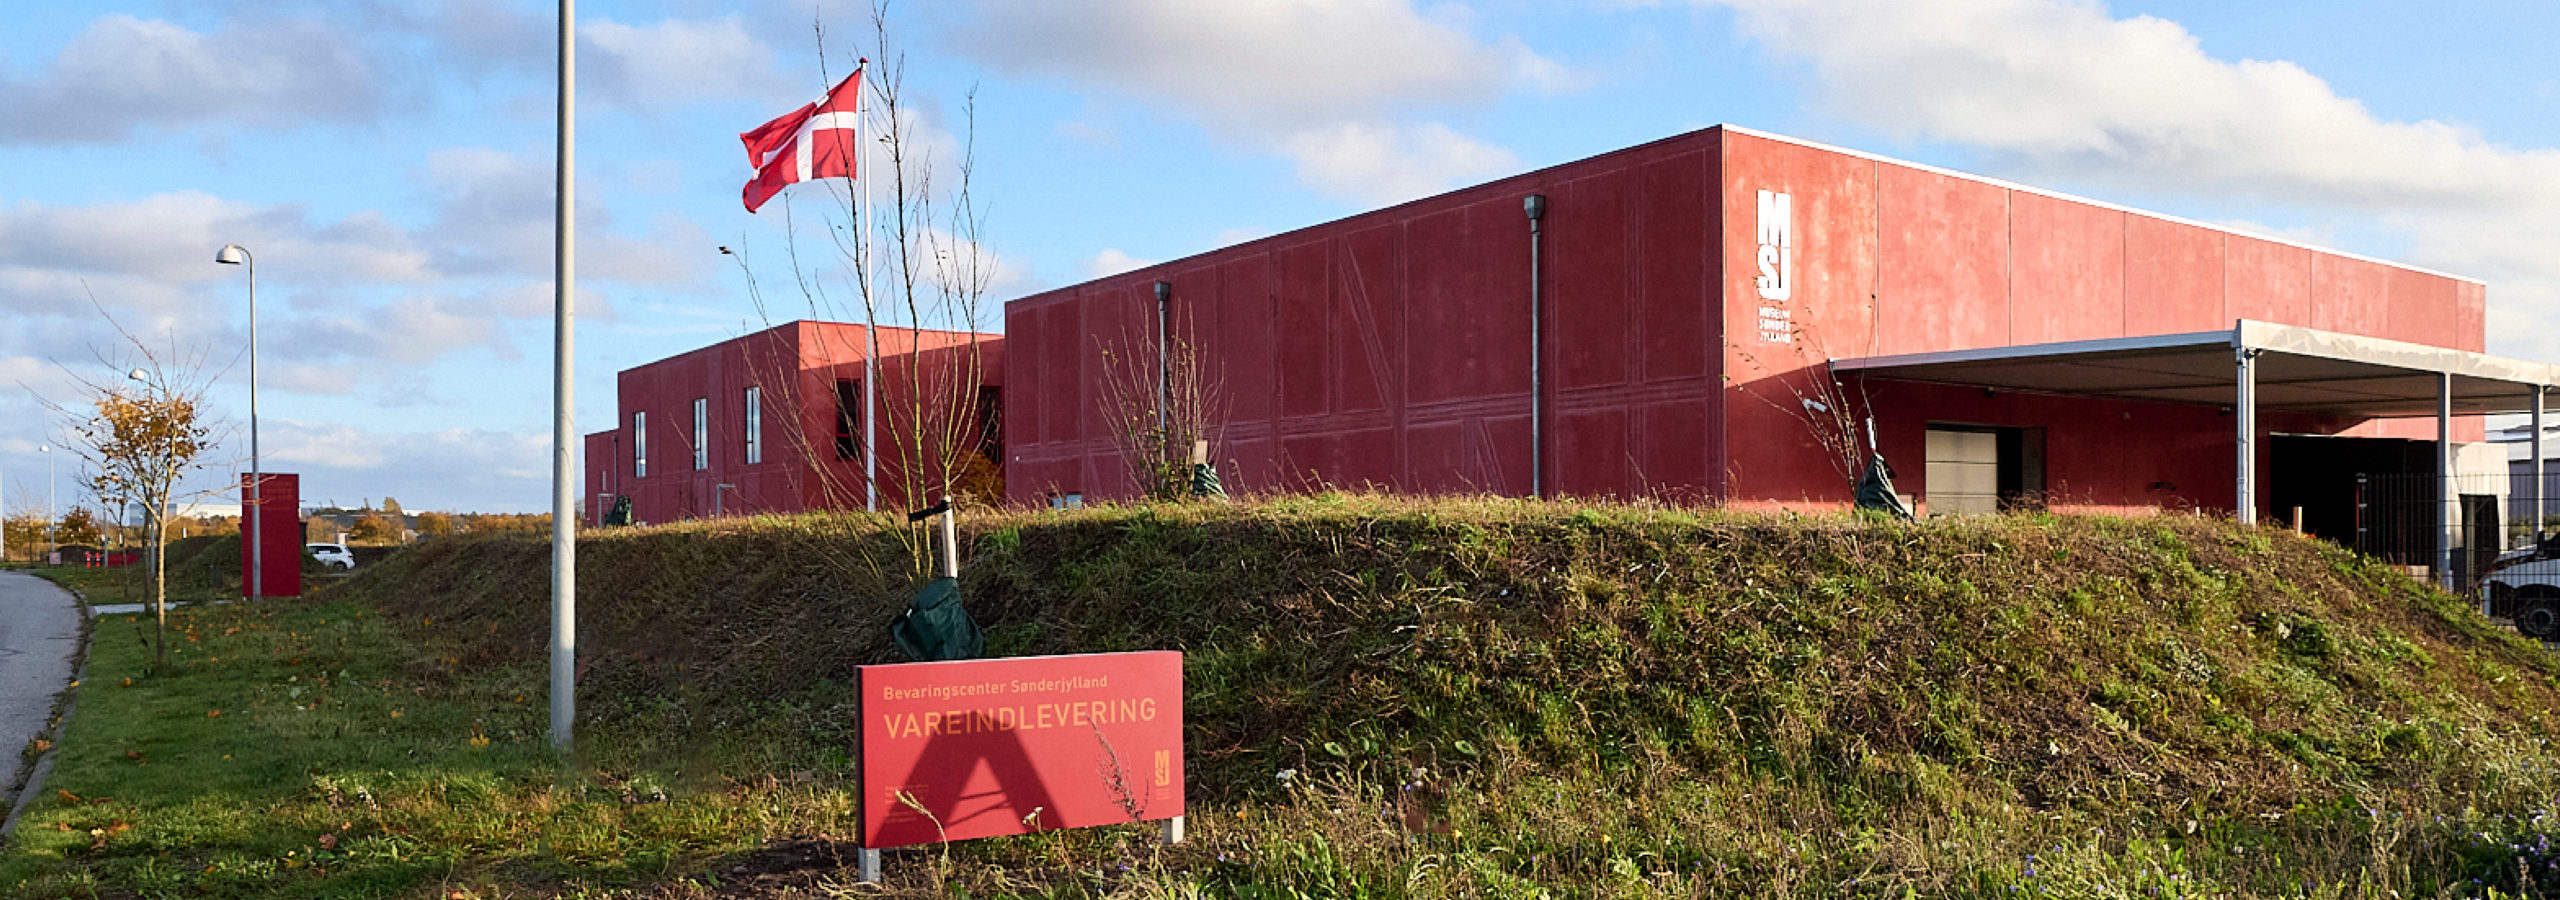 OMVISNING: Bevaringscenter Sønderjylland